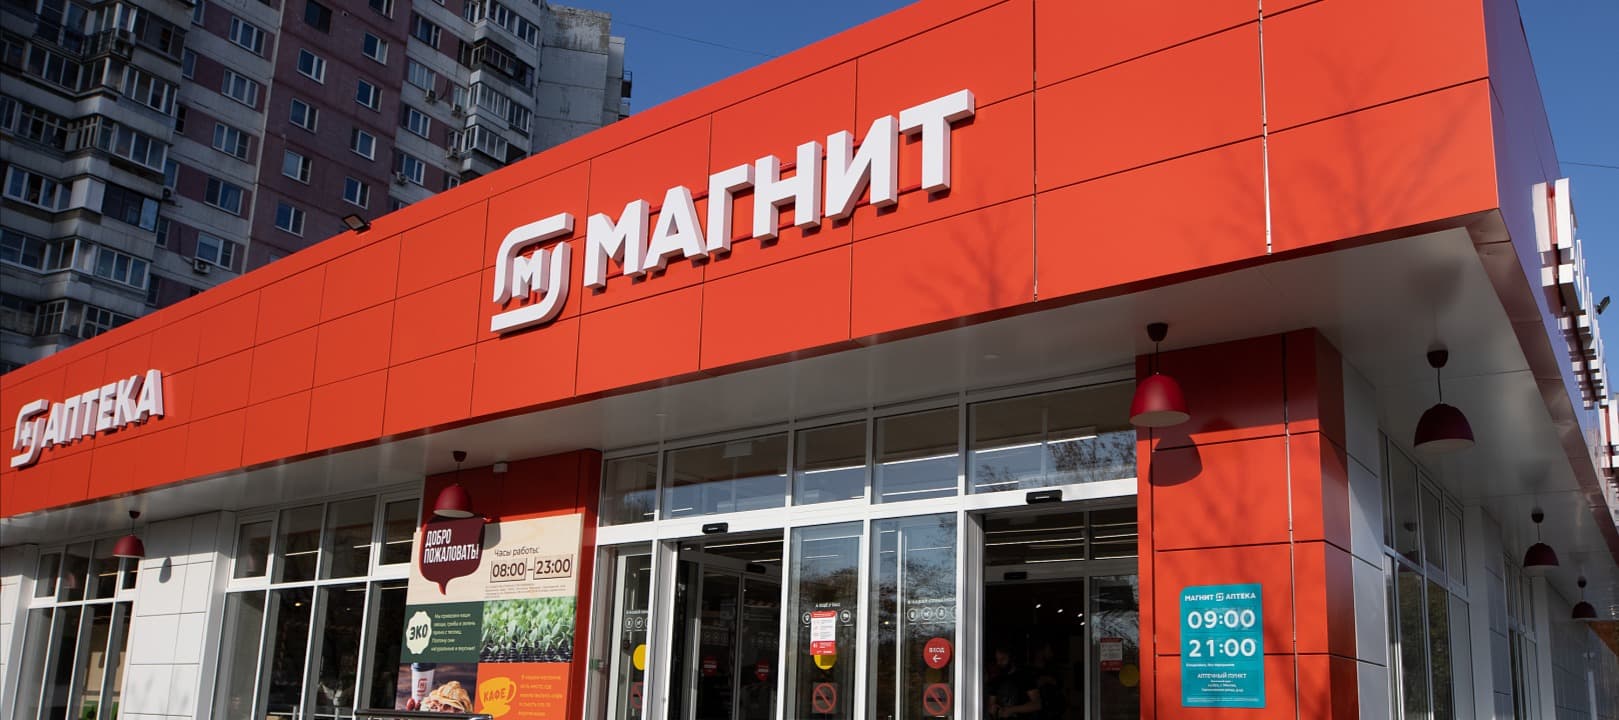 Фото новости: "«Магнит Маркет» начал тестировать пункты выдачи заказов в Москве"